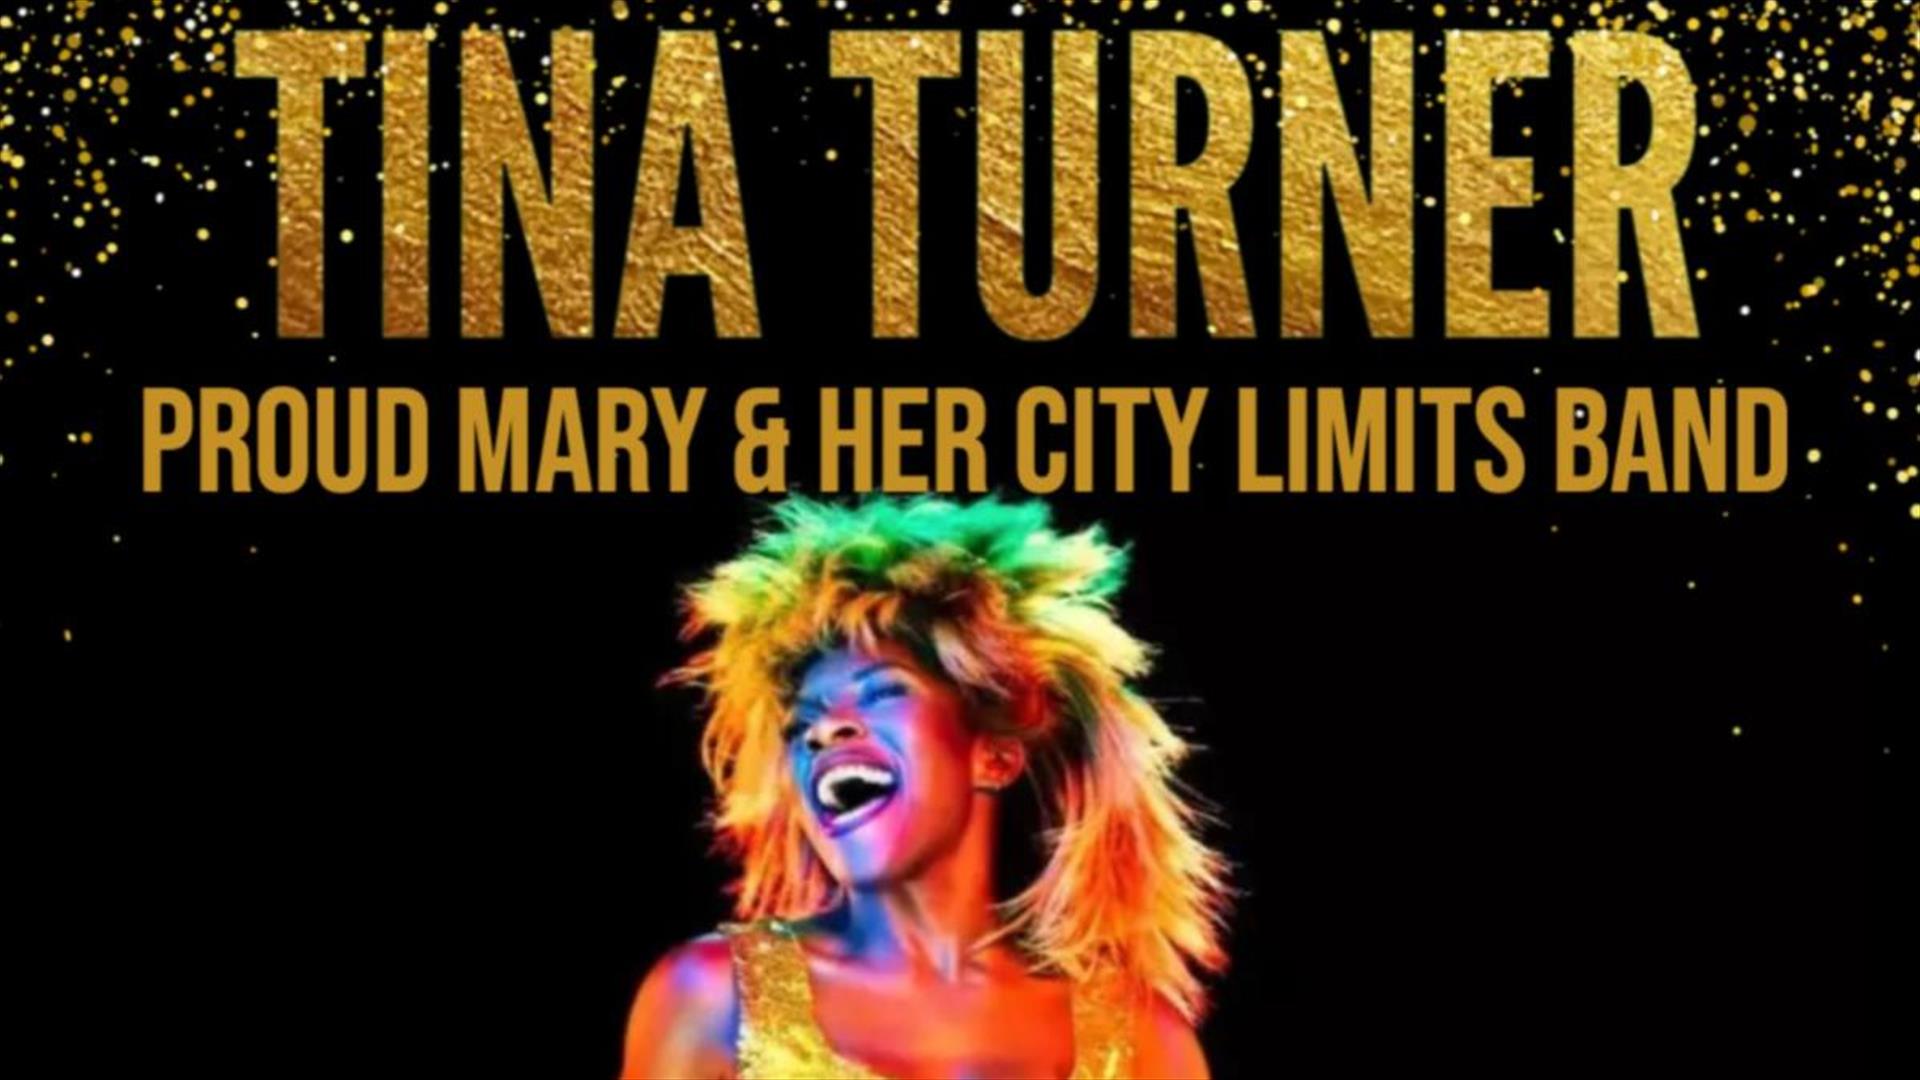 Amanda Lane  as Tina Turner  Tribute Act